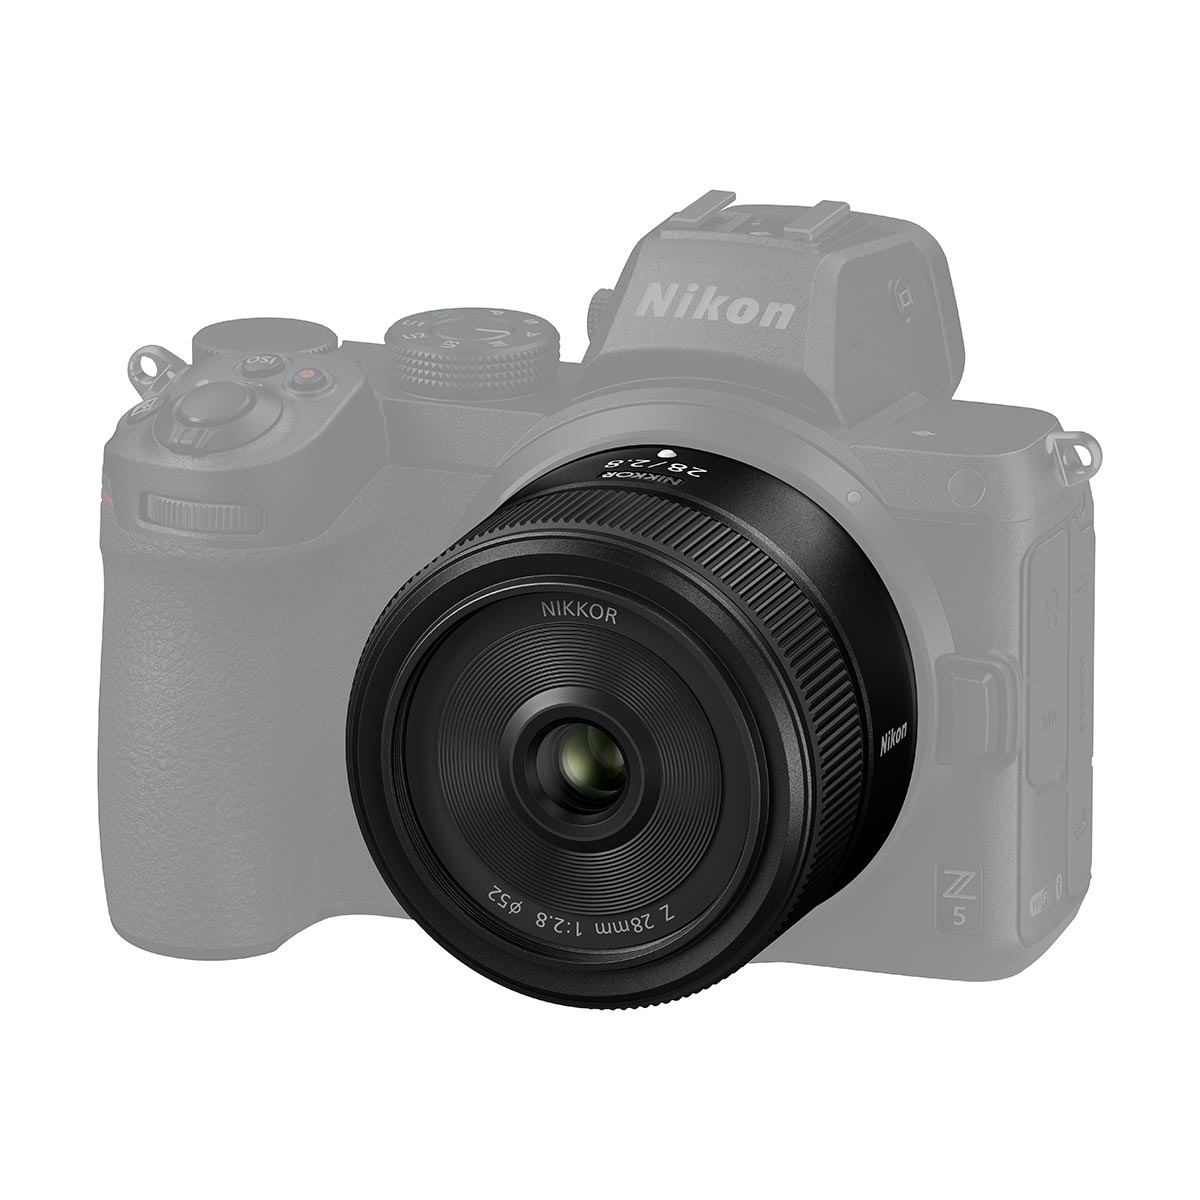 Nikon Z 28mm f/2.8 Lens